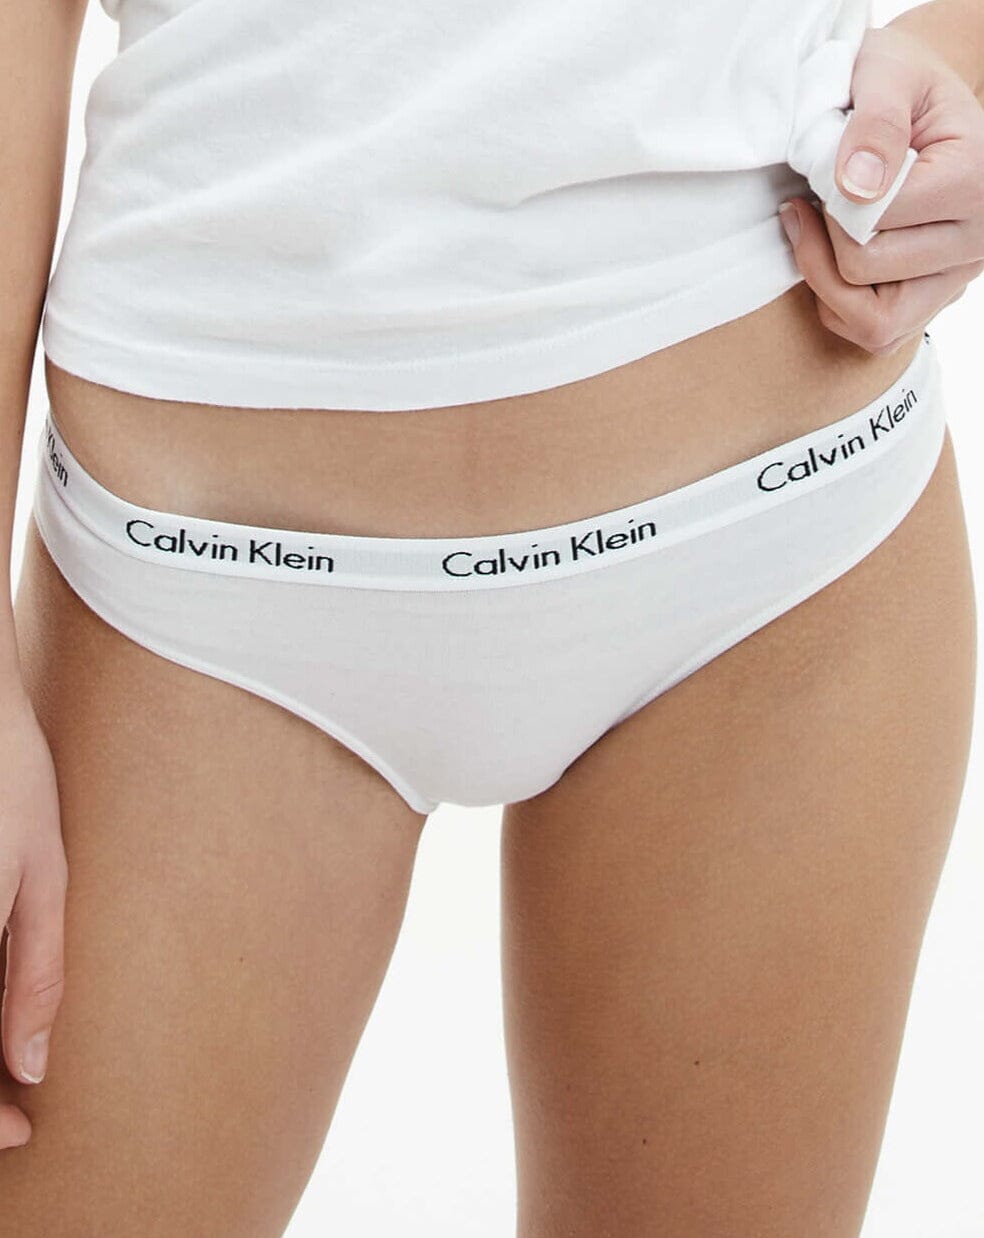 Calvin Klein Underwear Women's Carousel 3 Pack Puerto Rico